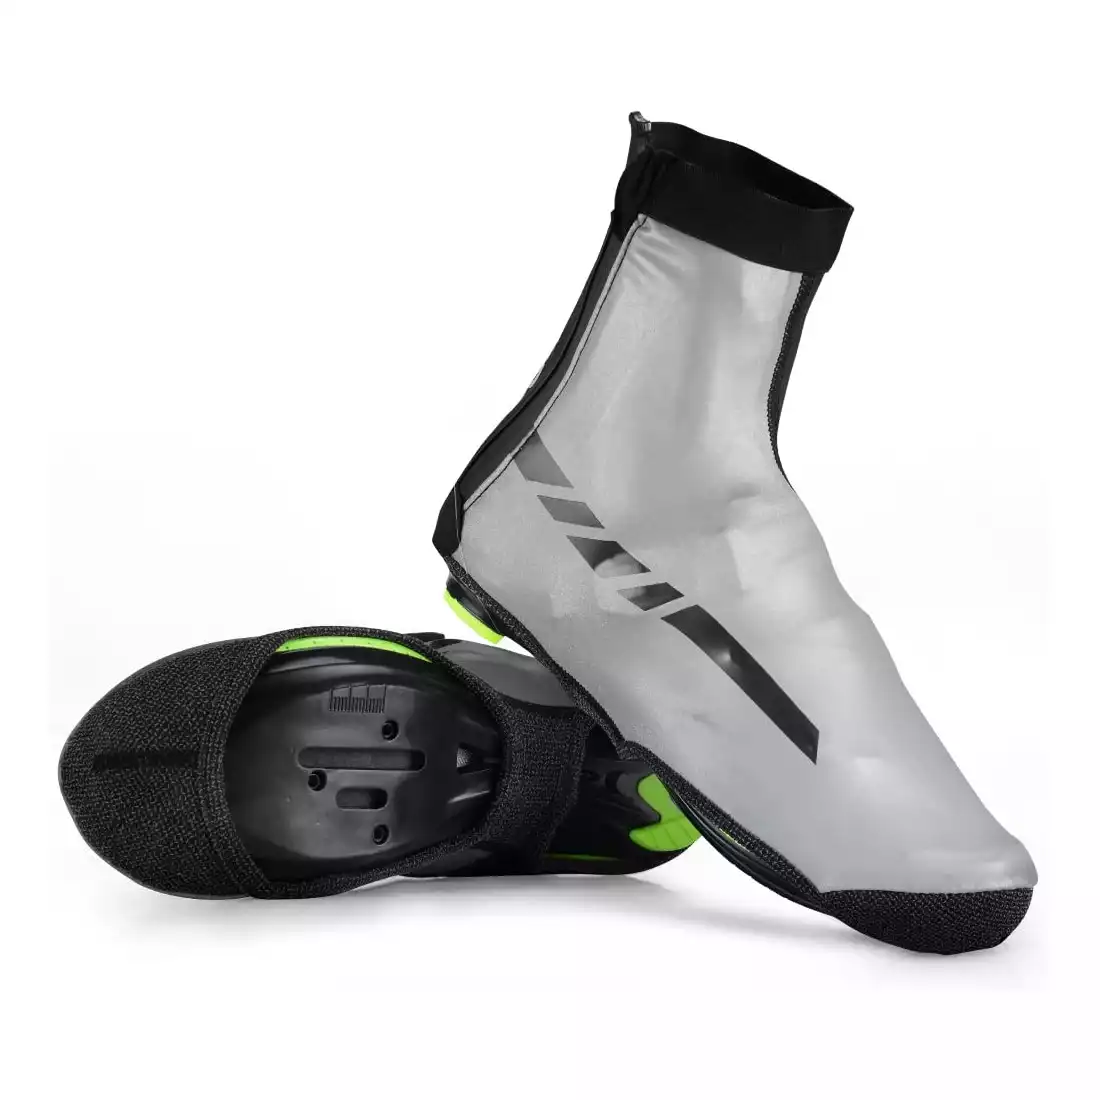 Rockbros ochraniacze na buty rowerowe wodoodporne LF1024